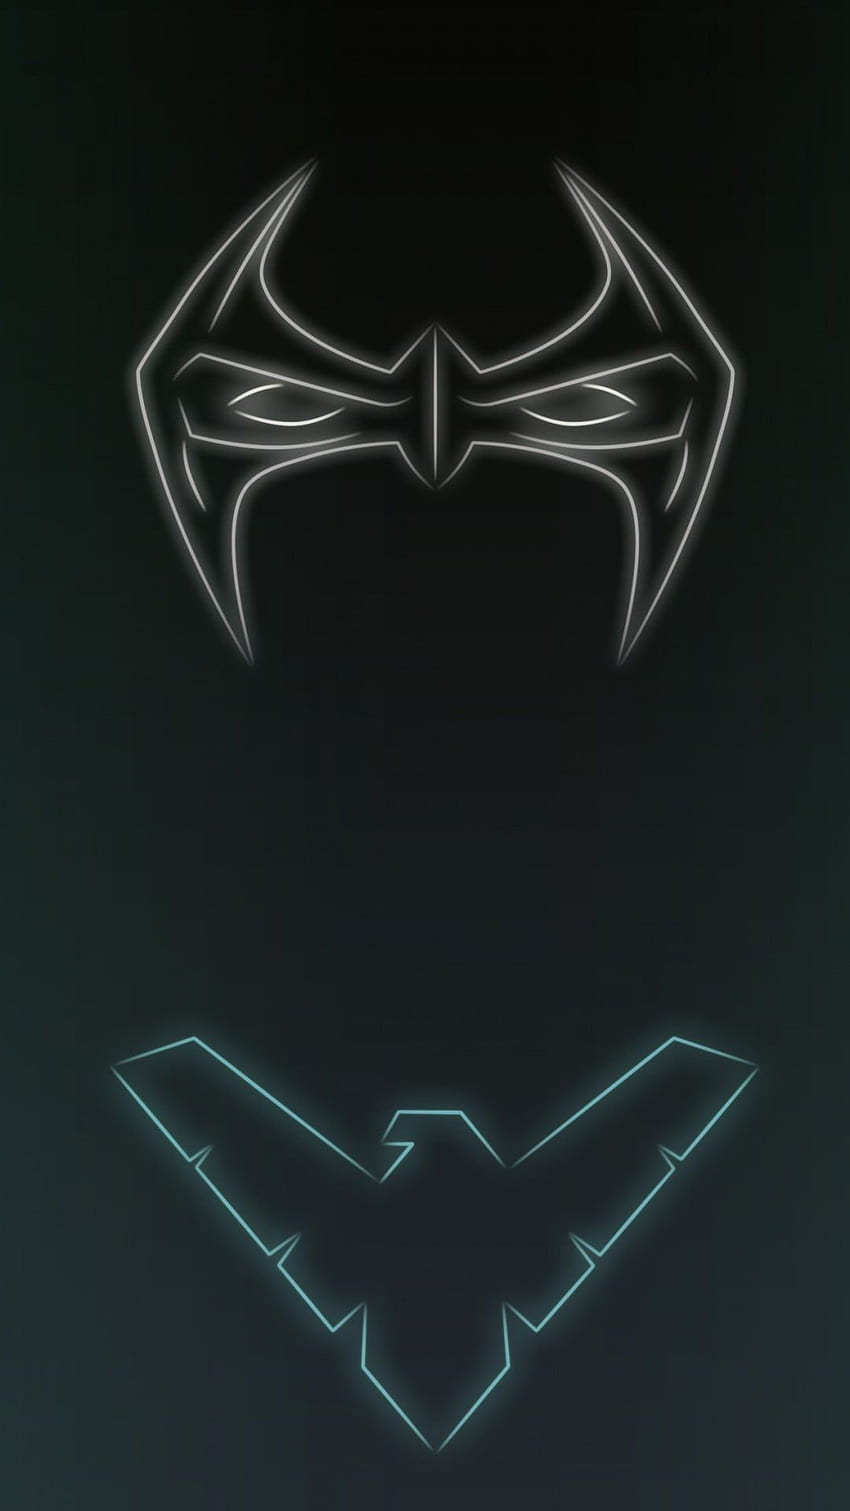 Batman neon logo HD wallpapers | Pxfuel